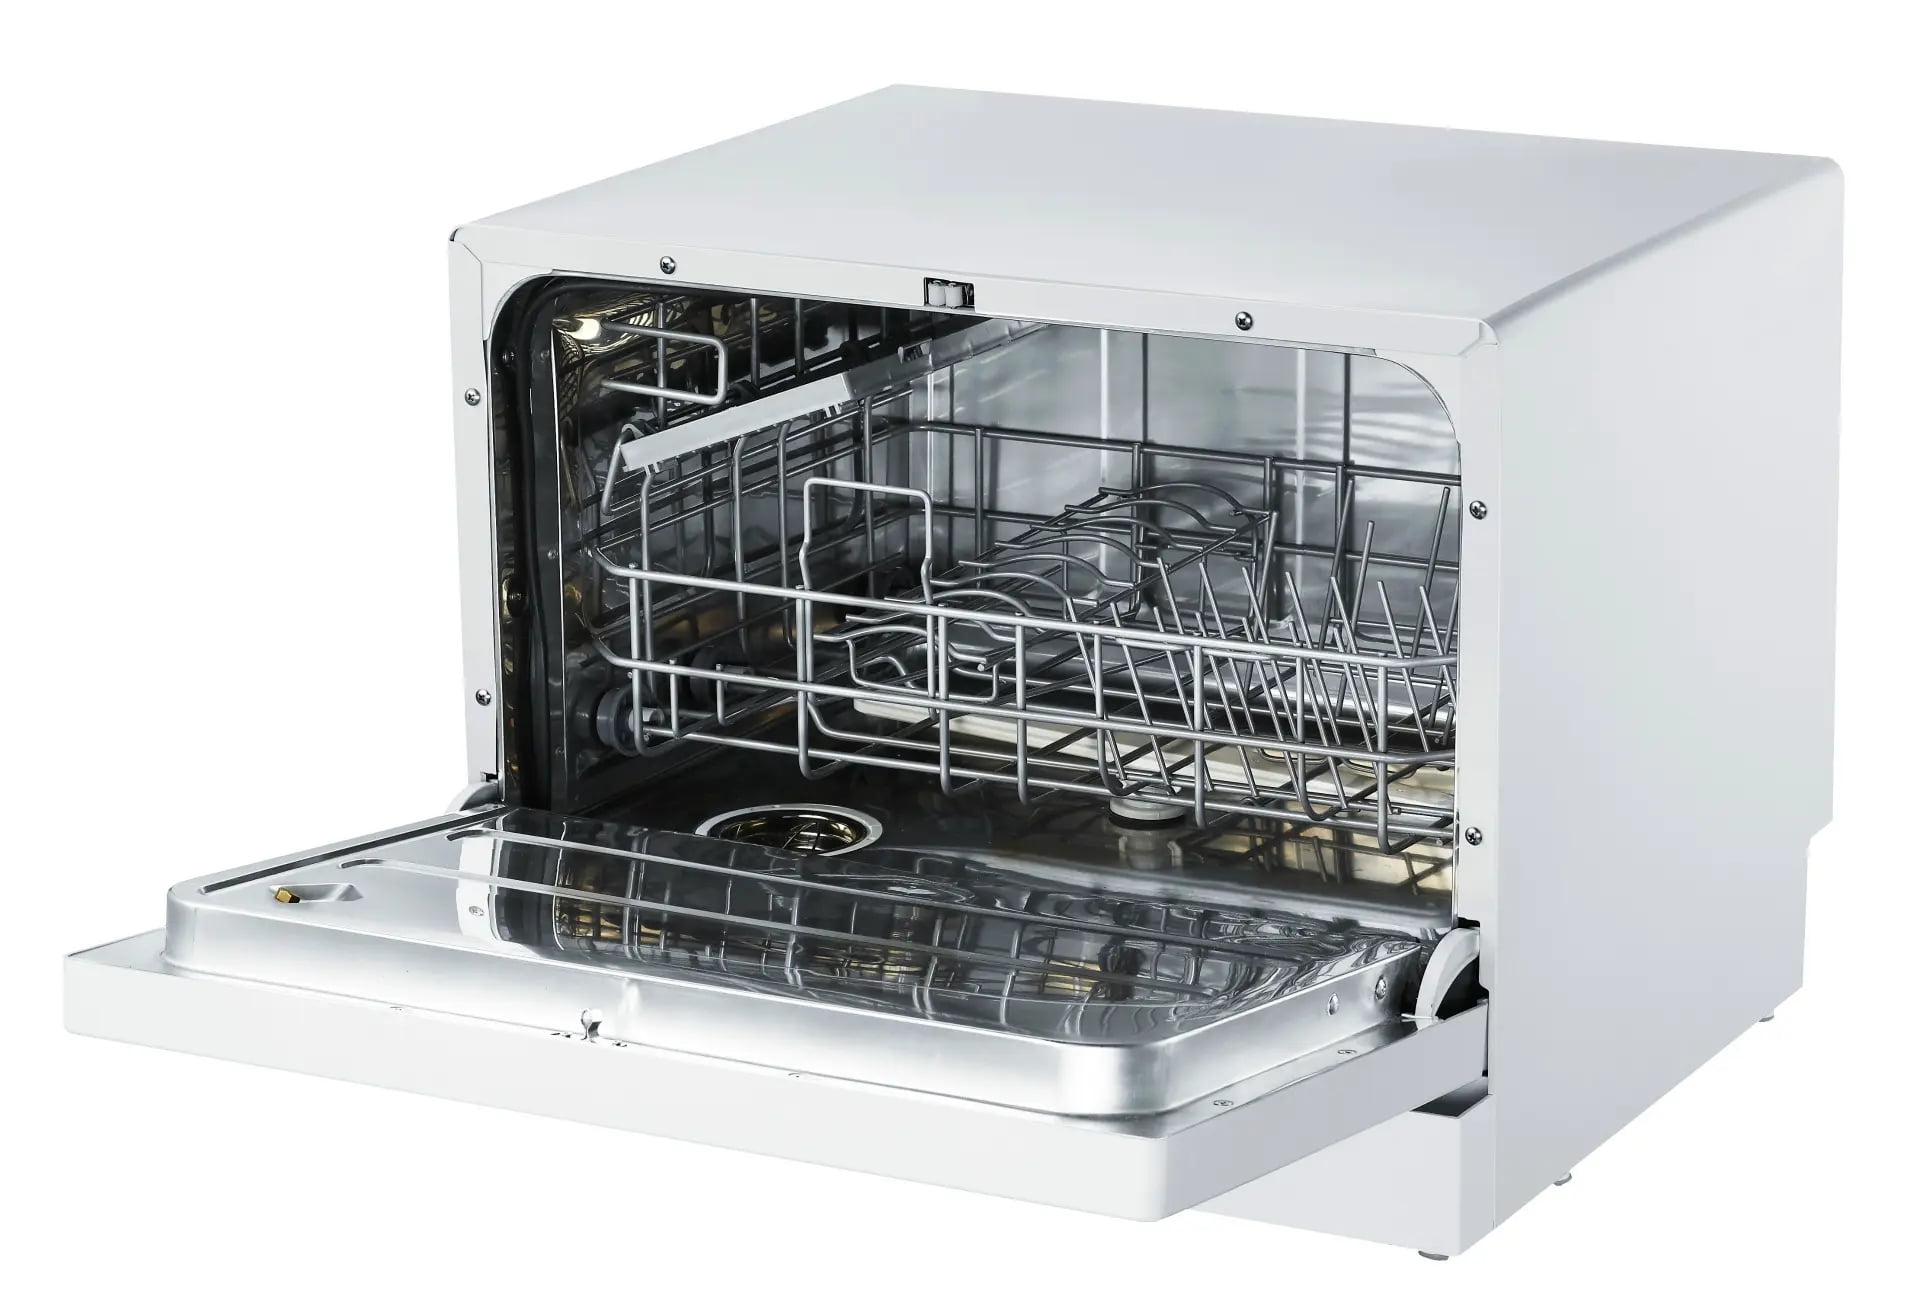 PECOAT® Nylon Powder Coating for dishwasher grids shelves